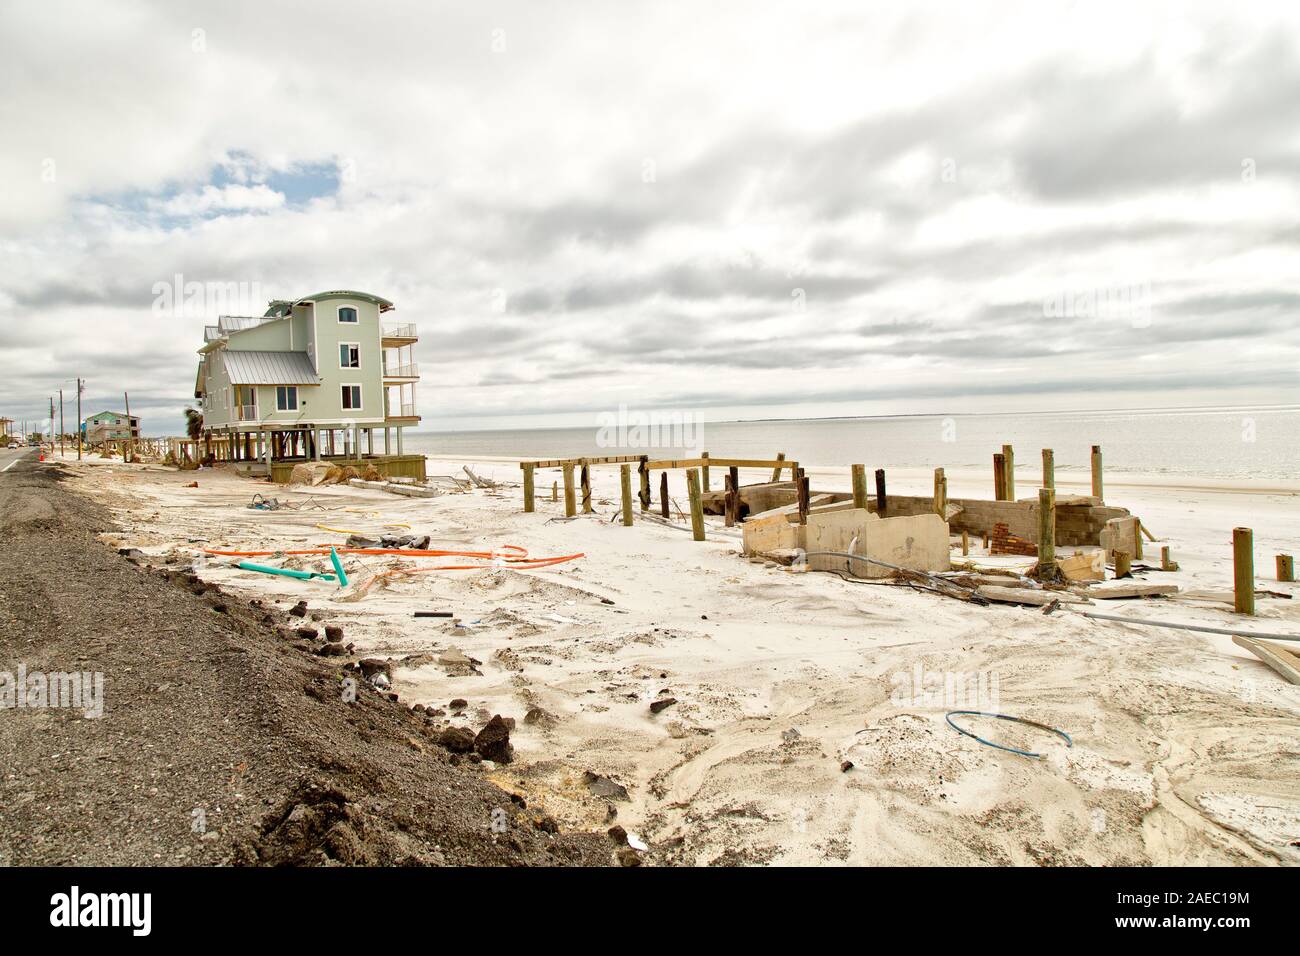 Vacante la propiedad en la playa con el resto de los fundamentos que sustentan desde hogares perdidos, a consecuencia del huracán 'Michael' 2018 la destrucción. Foto de stock